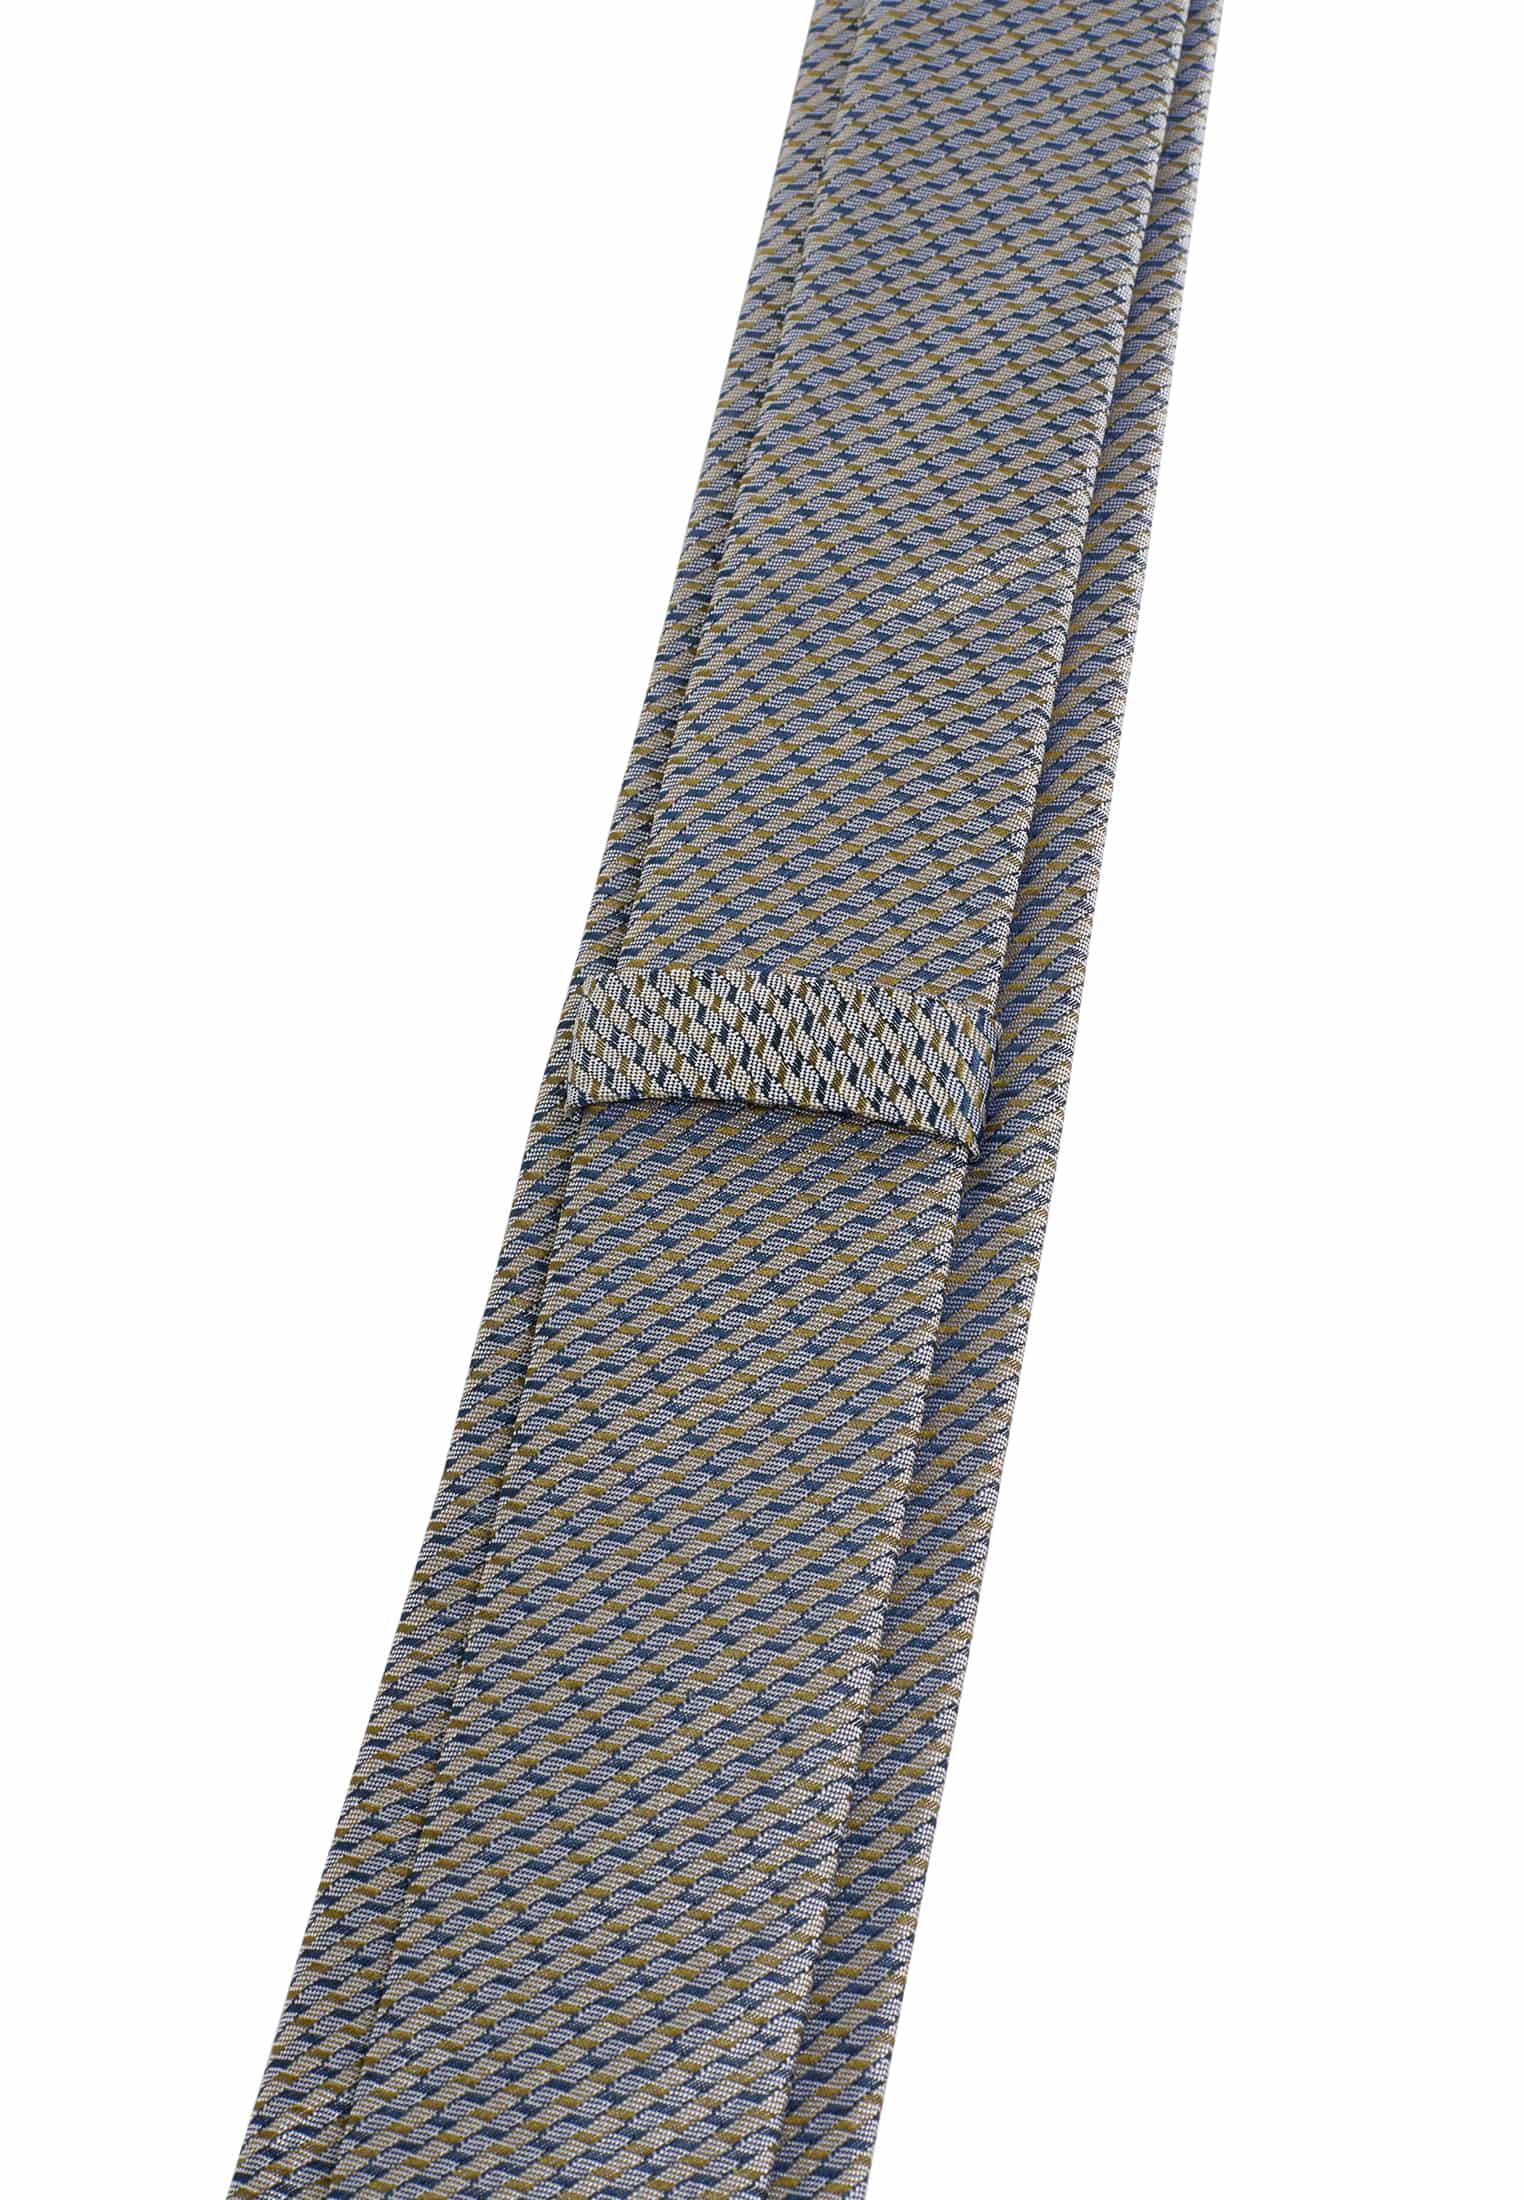 Krawatte in | navy/grün | strukturiert 142 navy/grün 1AC01951-81-88-142 